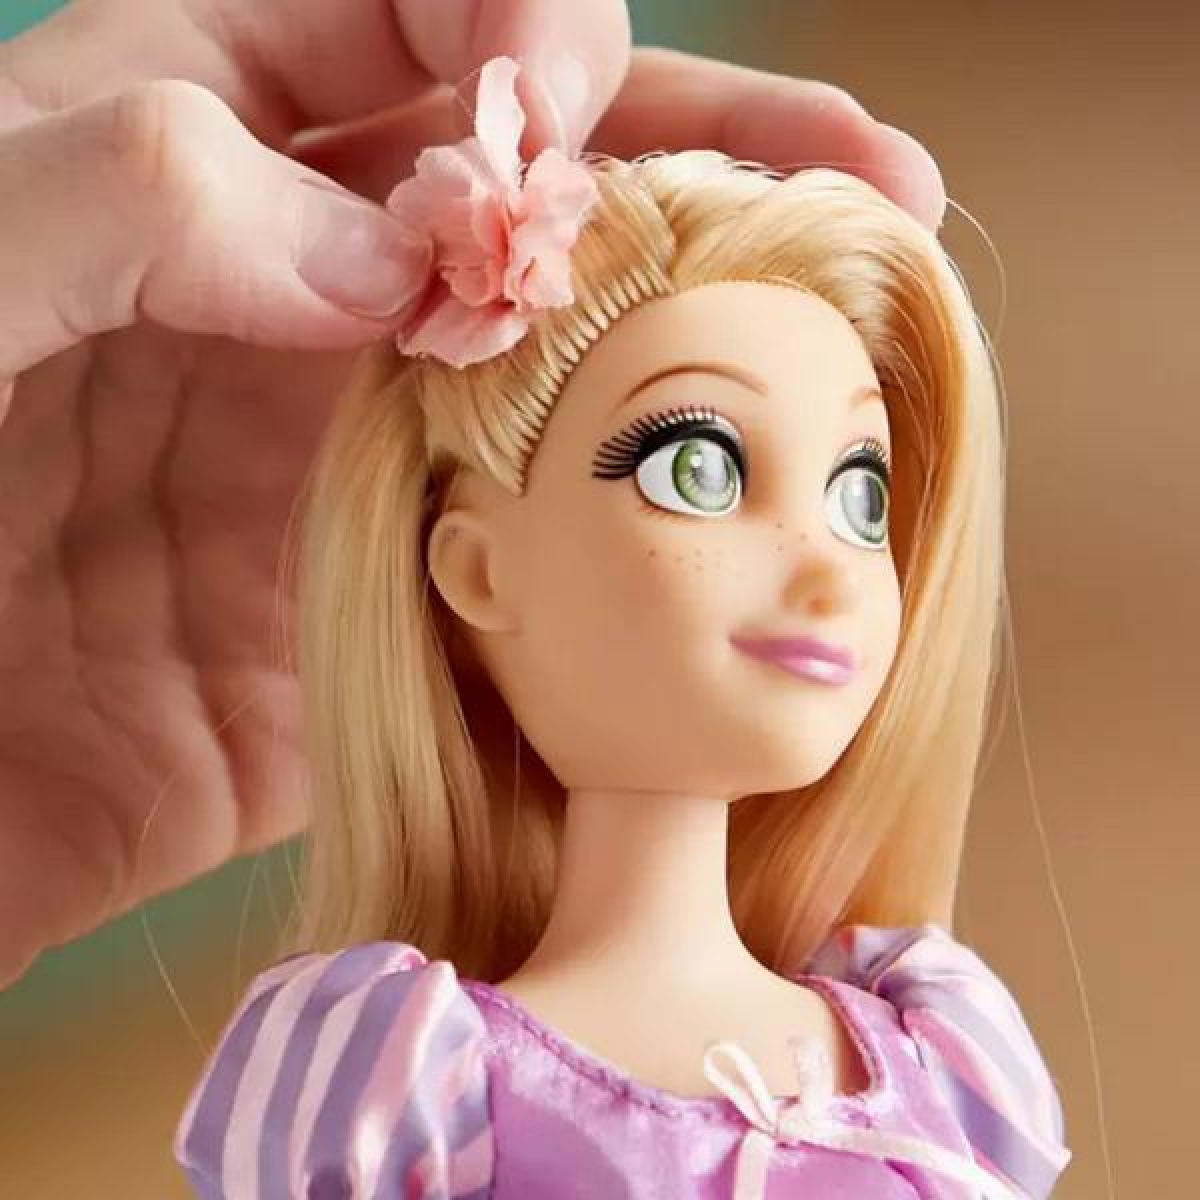 Disney Rapunzel Κλασική Κούκλα 29cm Με αξεσουάρ 3 ετών και Πάνω